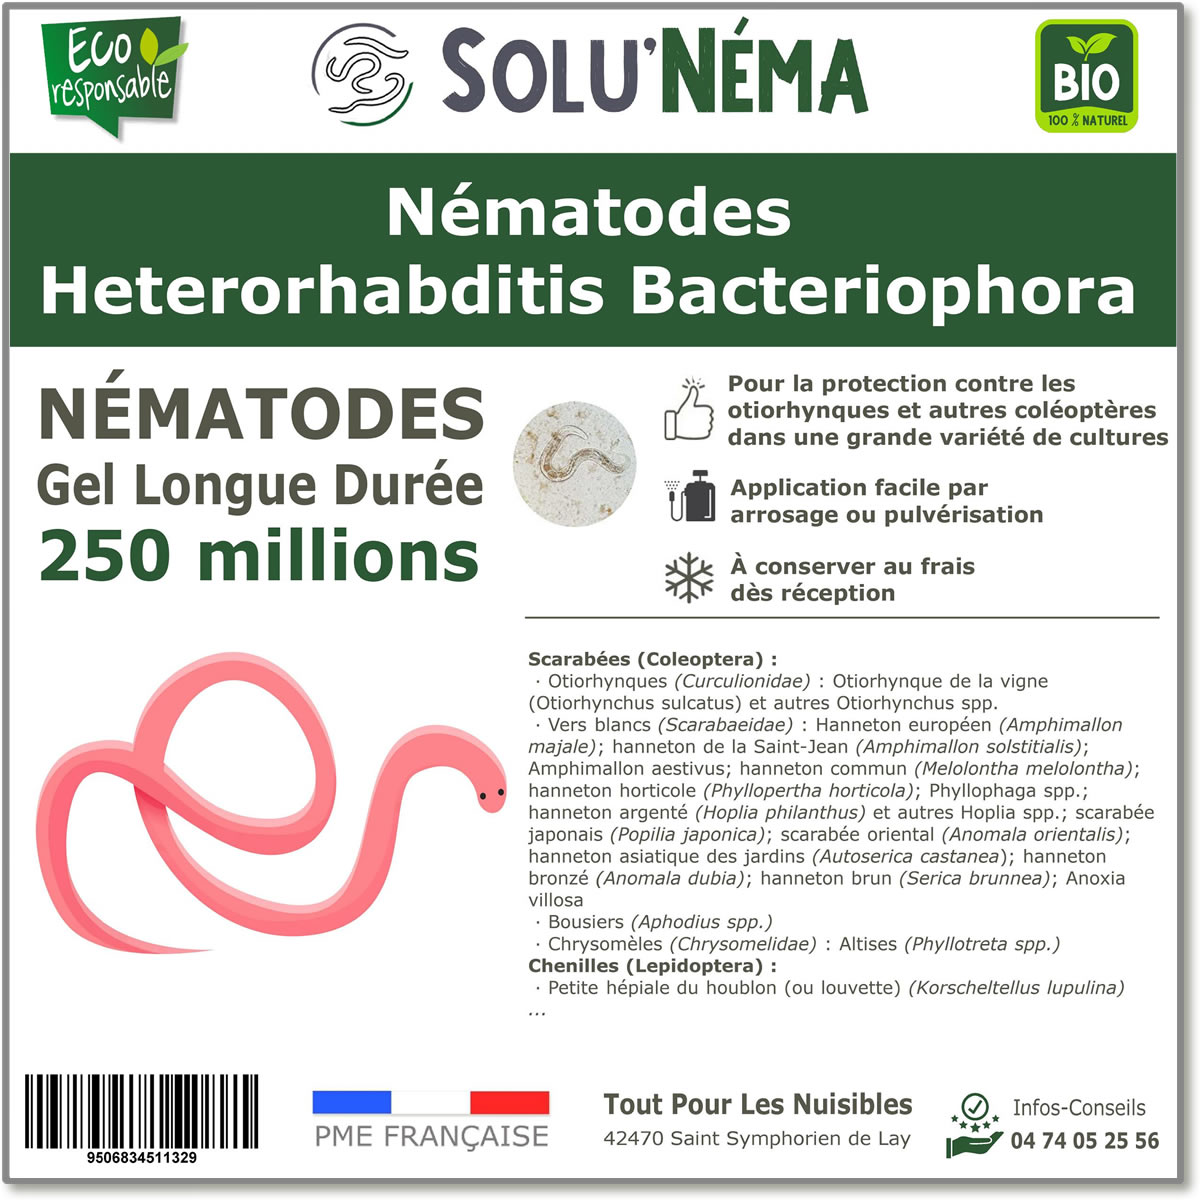 50 Millions de nématodes Heterorhabditis Bacteriophora (HB)